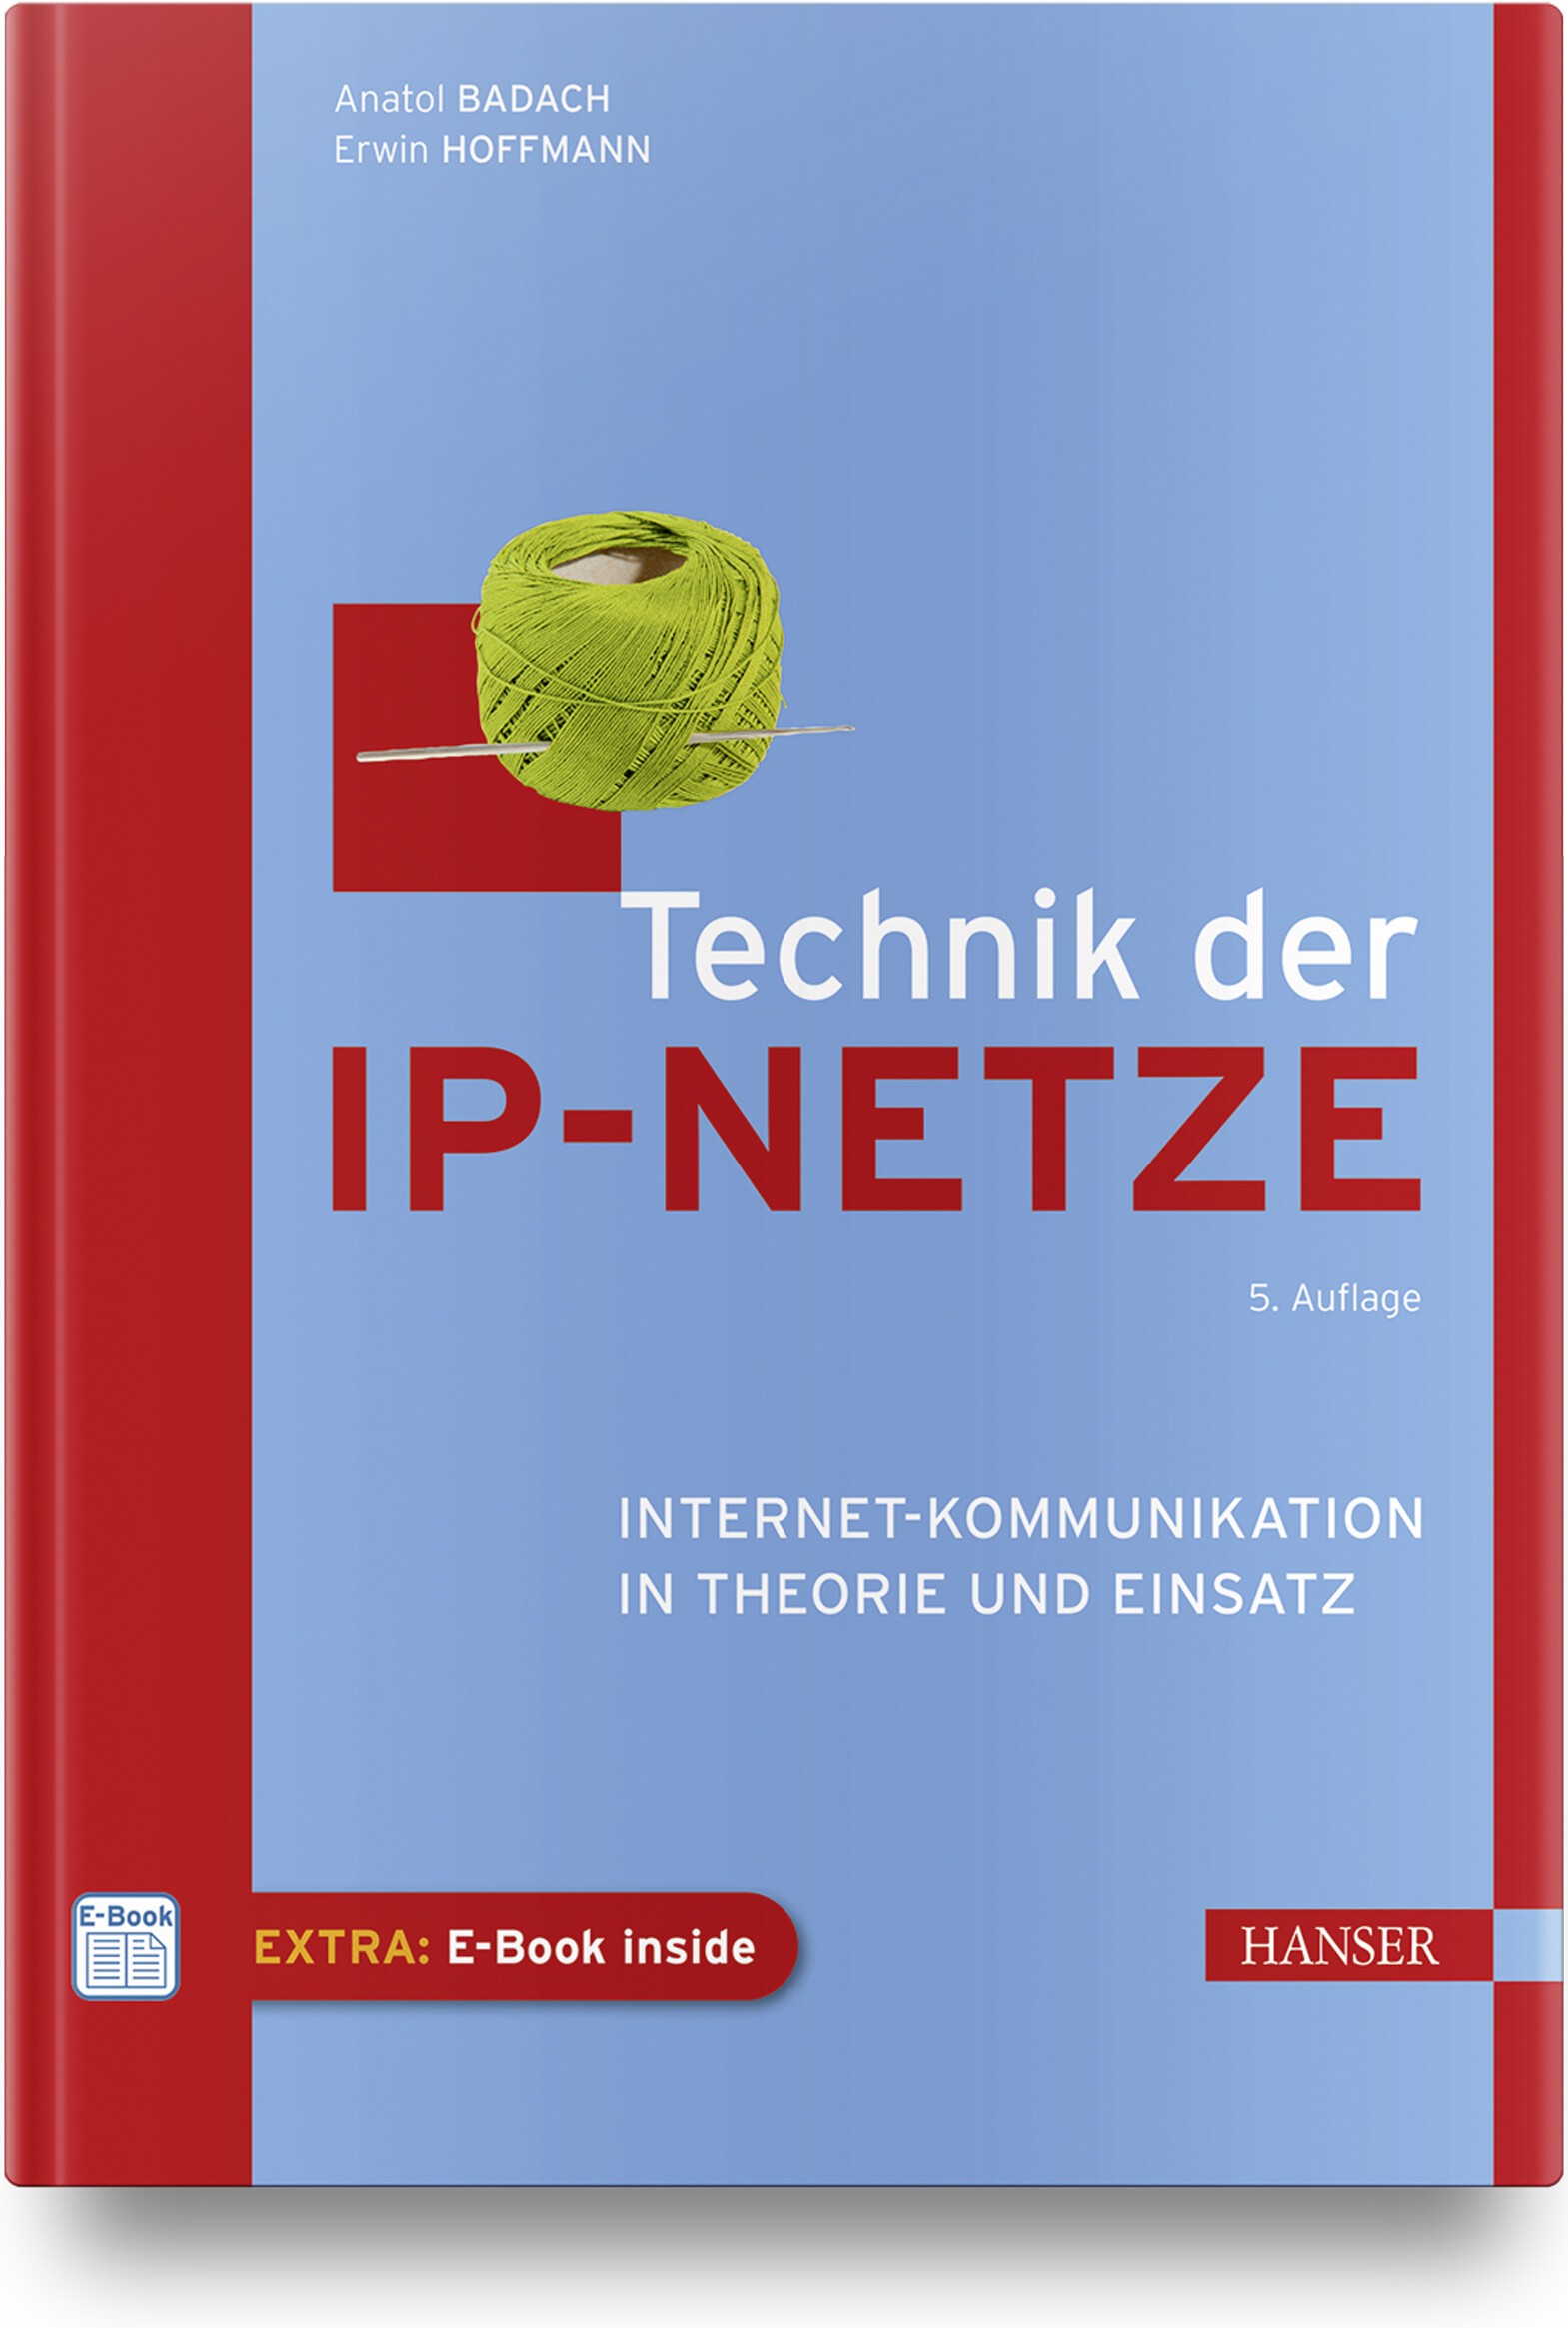 Technik der IP-Netze (5. Auflage)